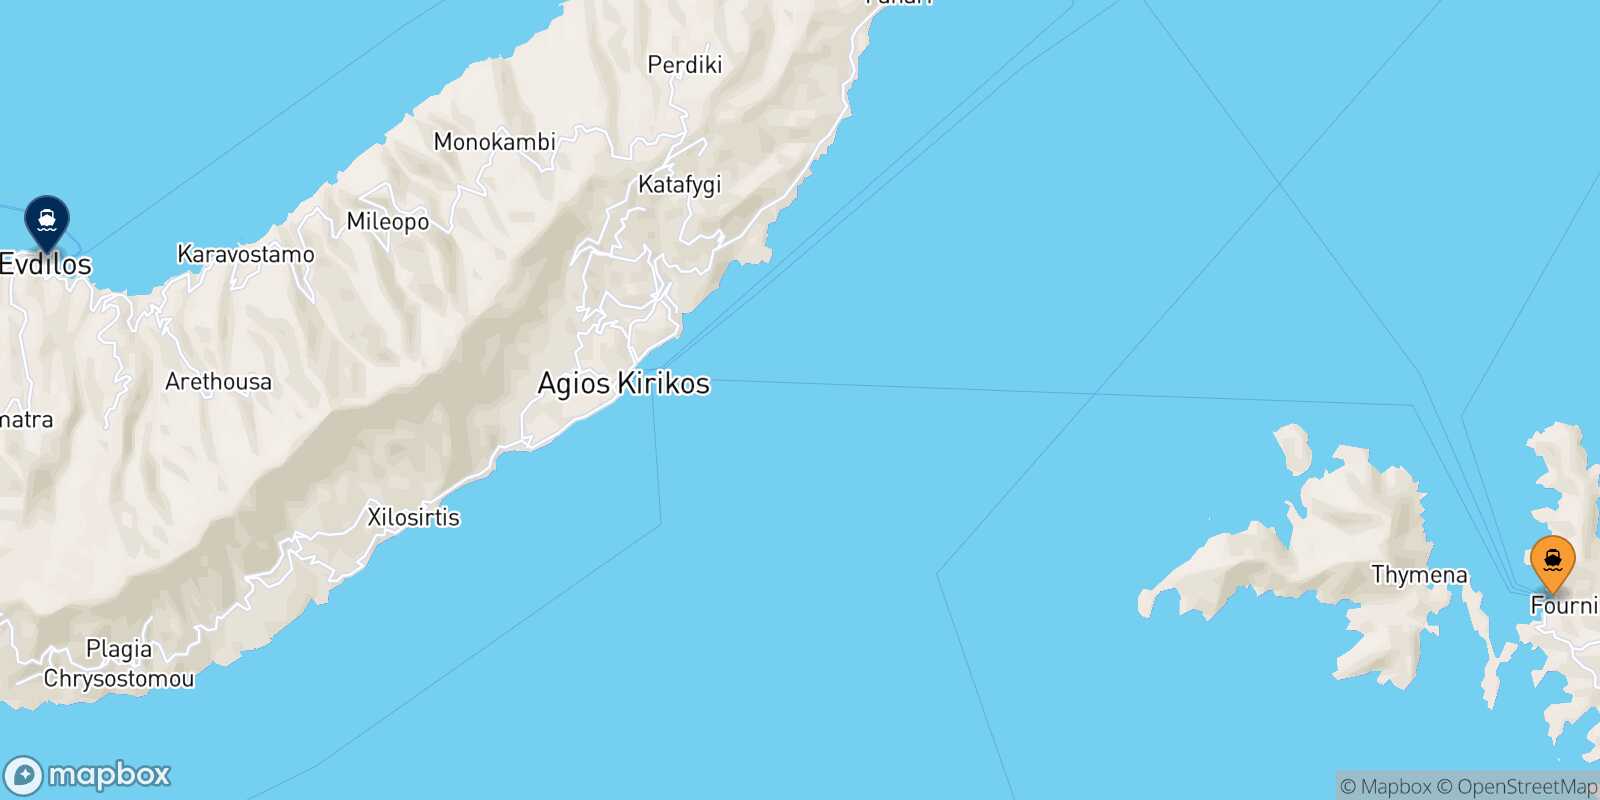 Fourni Evdilos (Ikaria) route map